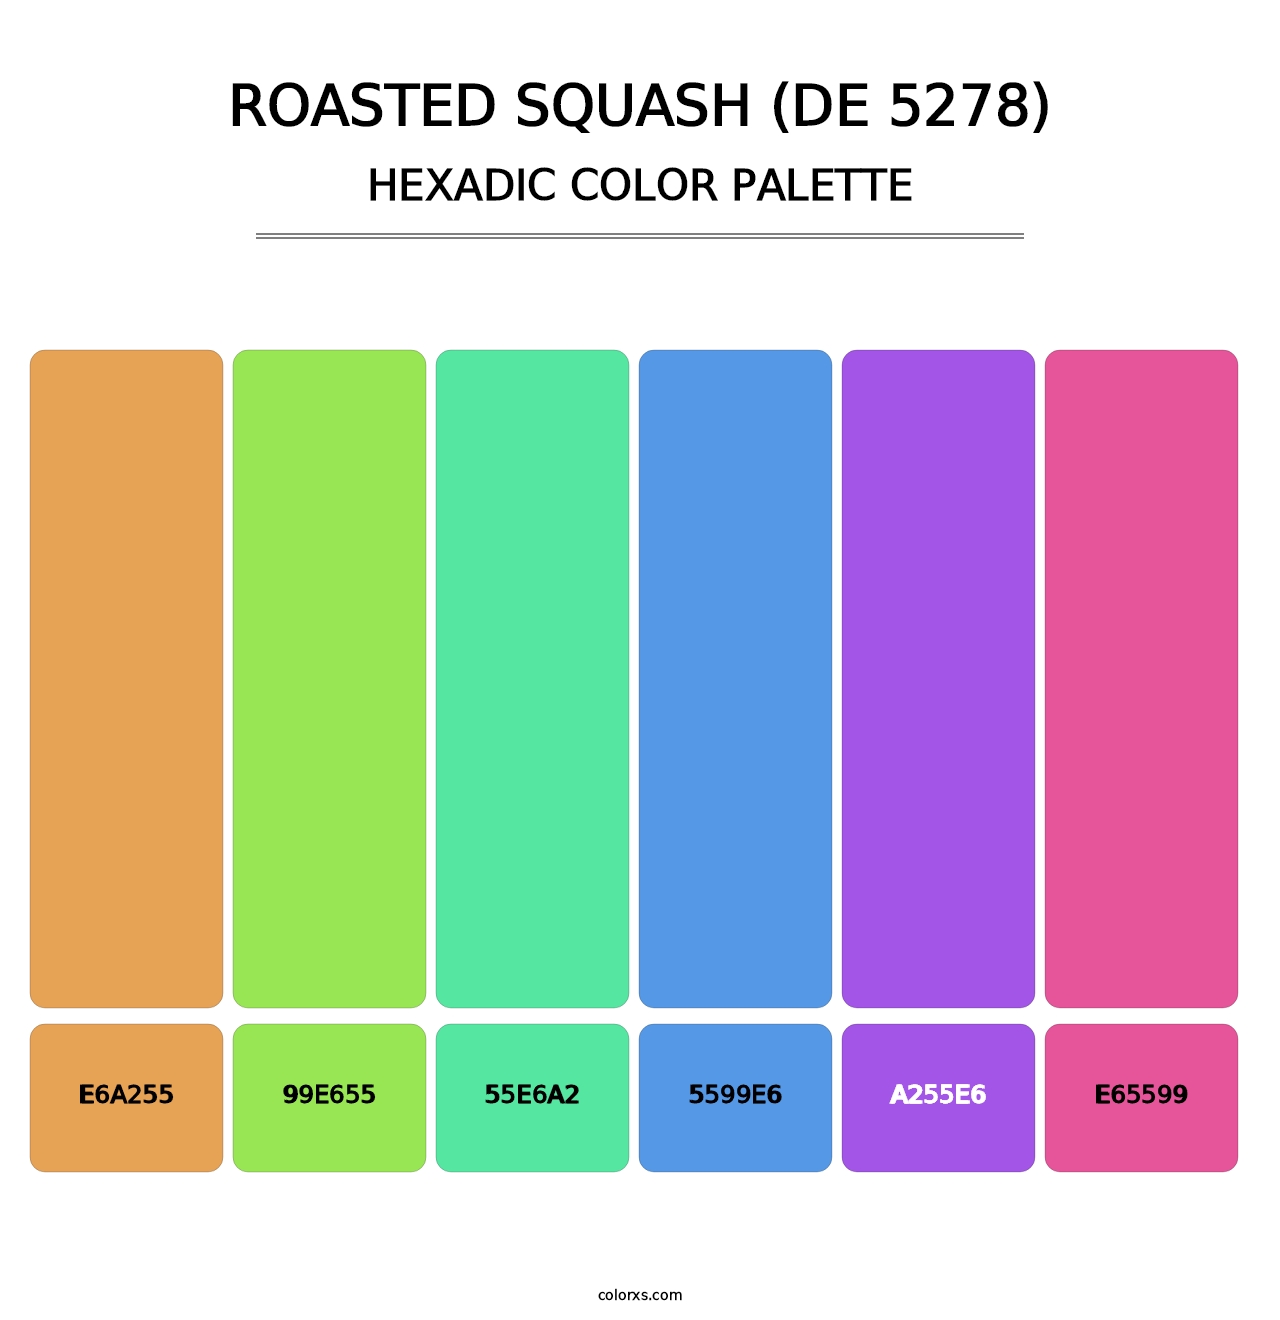 Roasted Squash (DE 5278) - Hexadic Color Palette